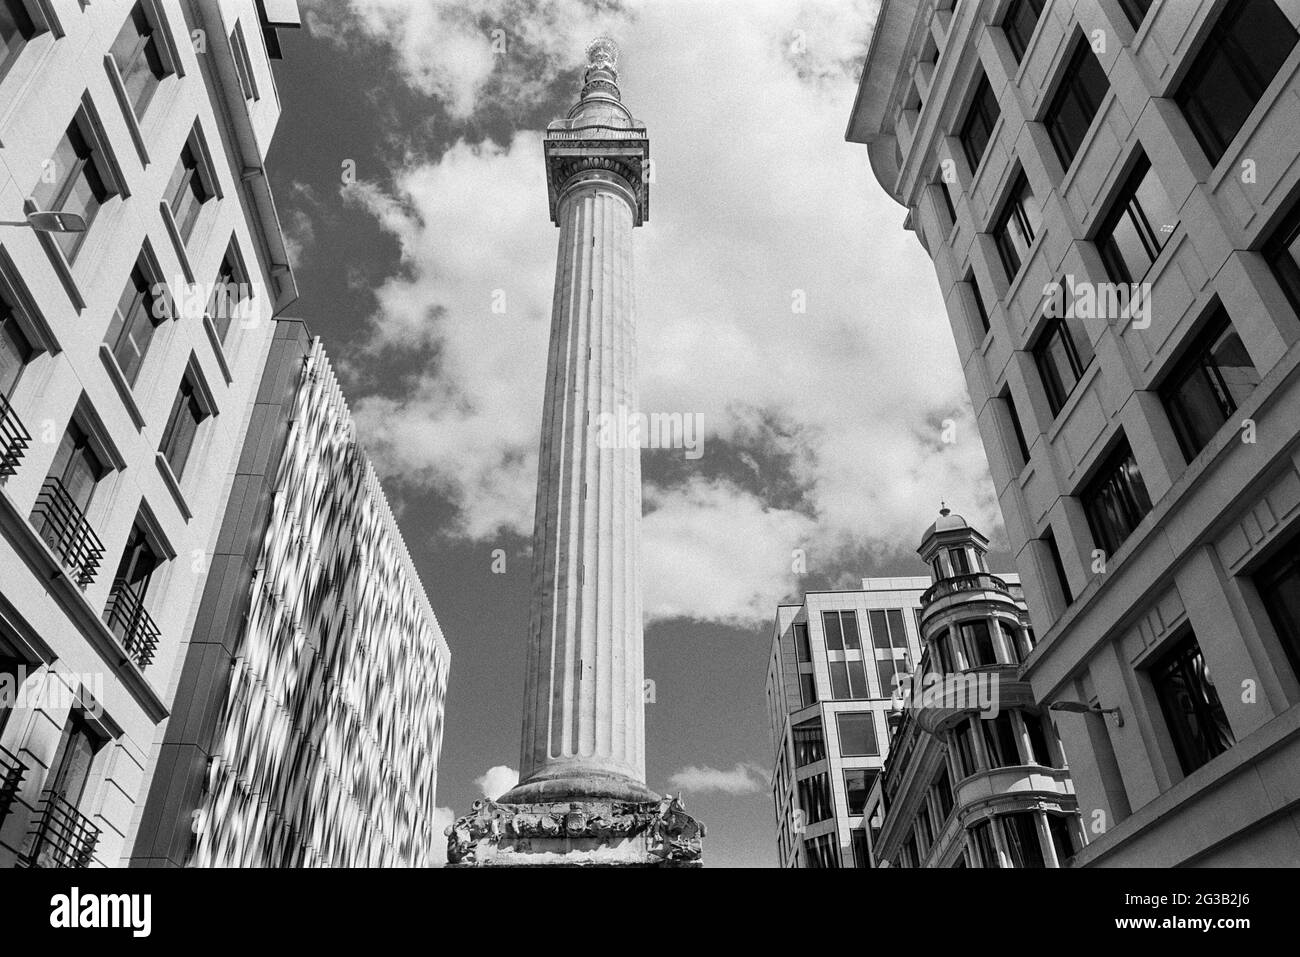 Le Monument de la ville de Londres, Royaume-Uni, avec ses bureaux environnants Banque D'Images